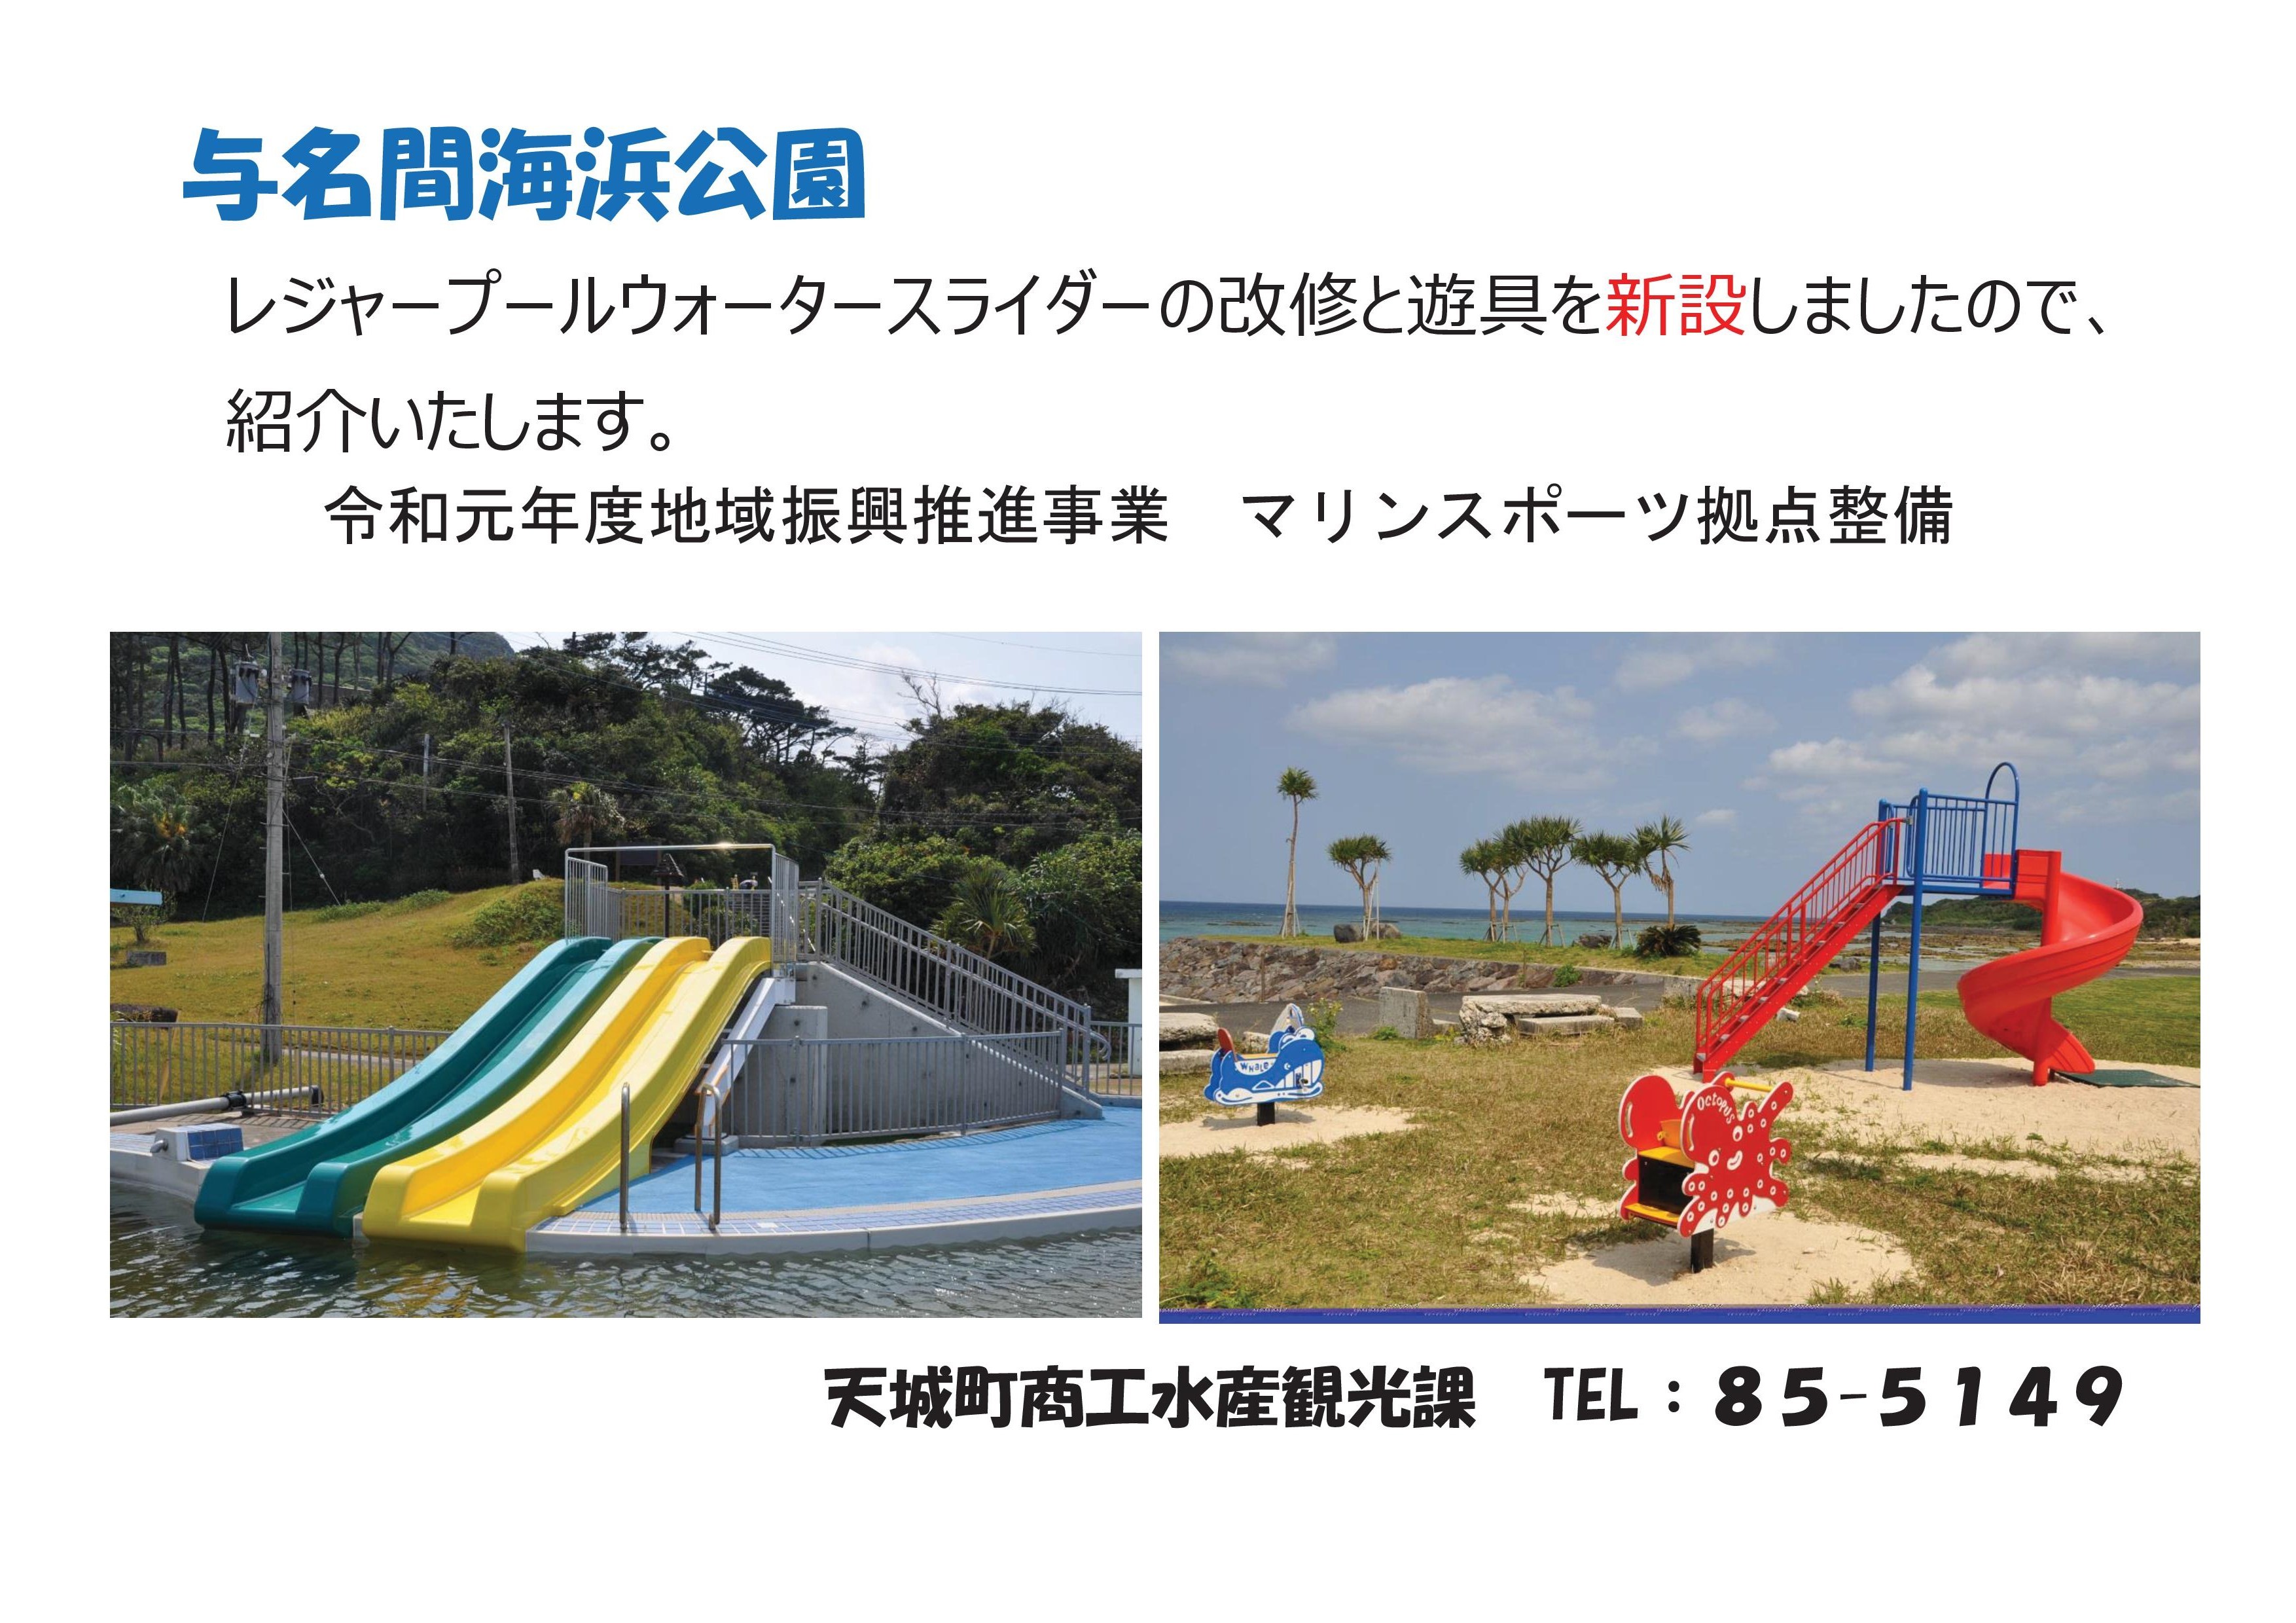 与名間海浜公園.jpg